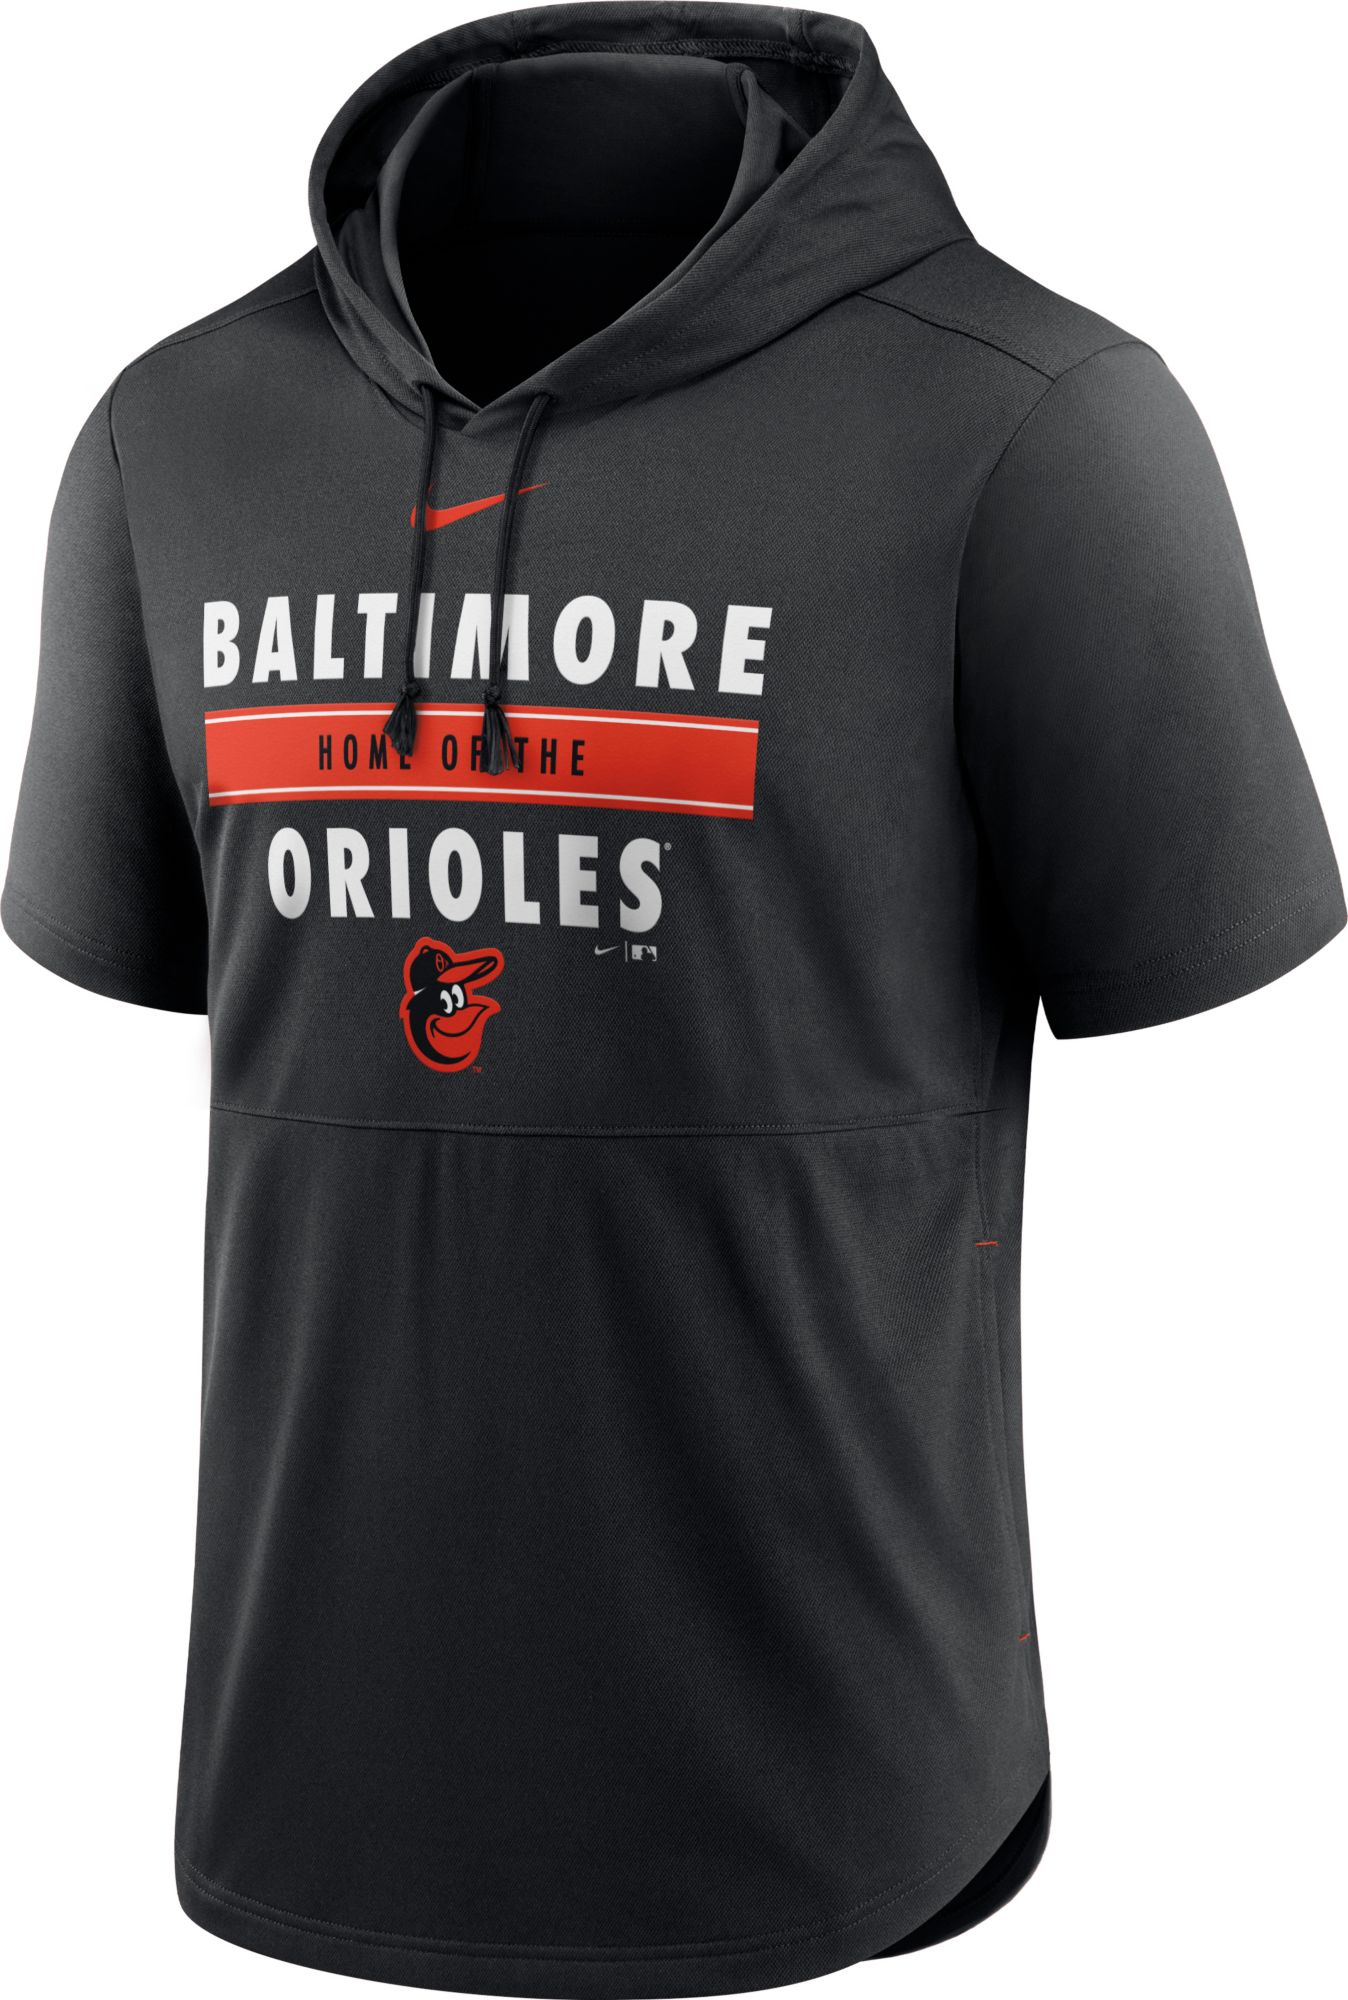 Nike / Men's Baltimore Orioles Black Short Sleeve Pullover Hoodie